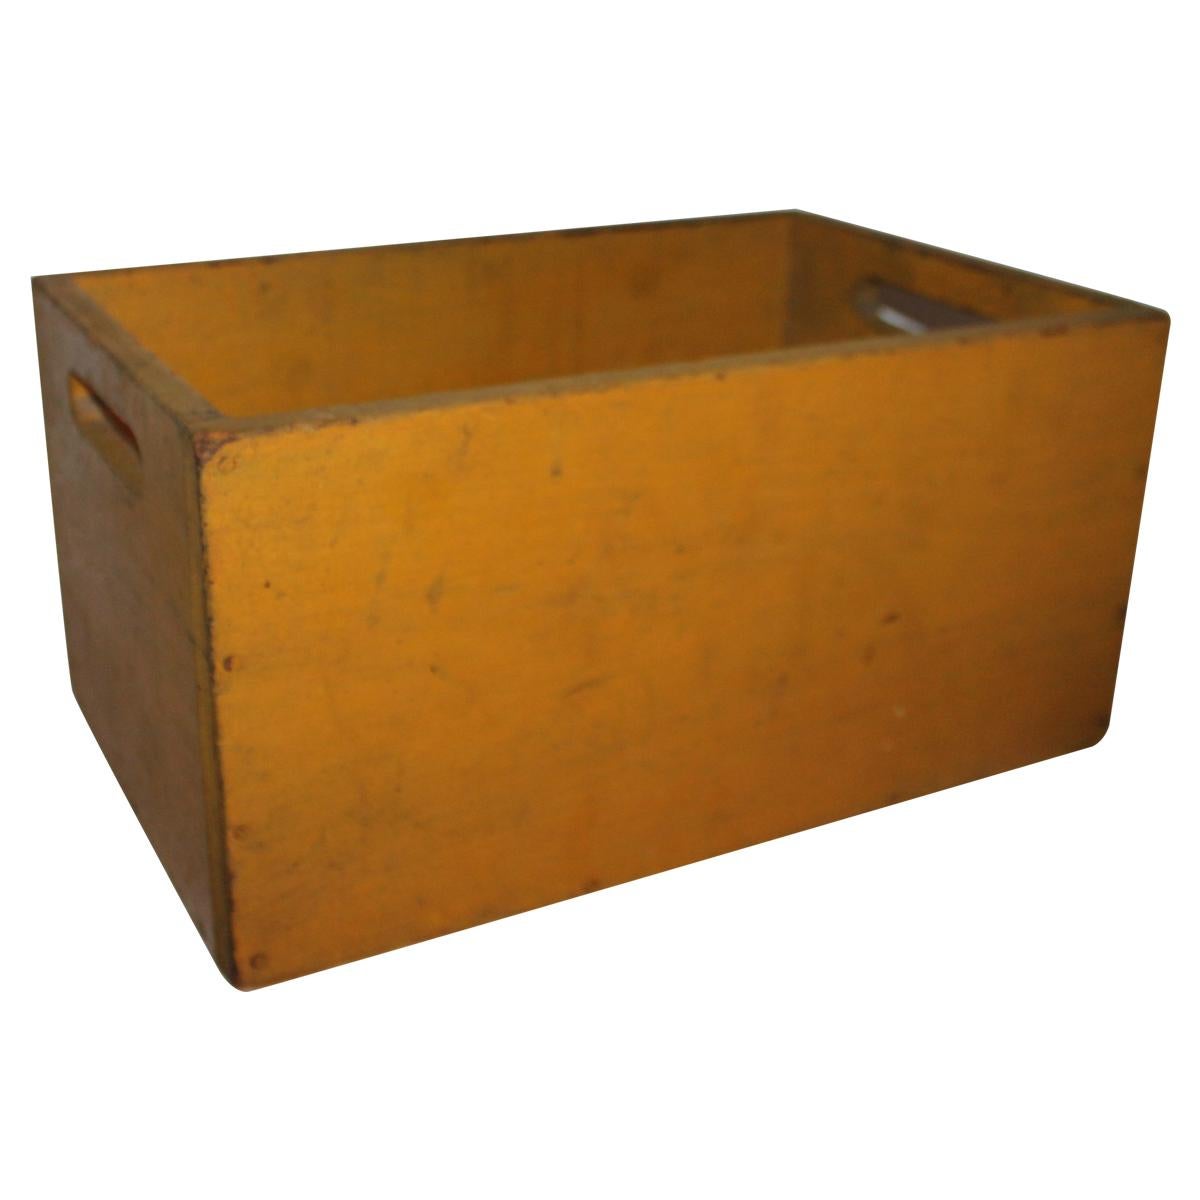 19th Century Original Chrome Yellow Painted Handled Box